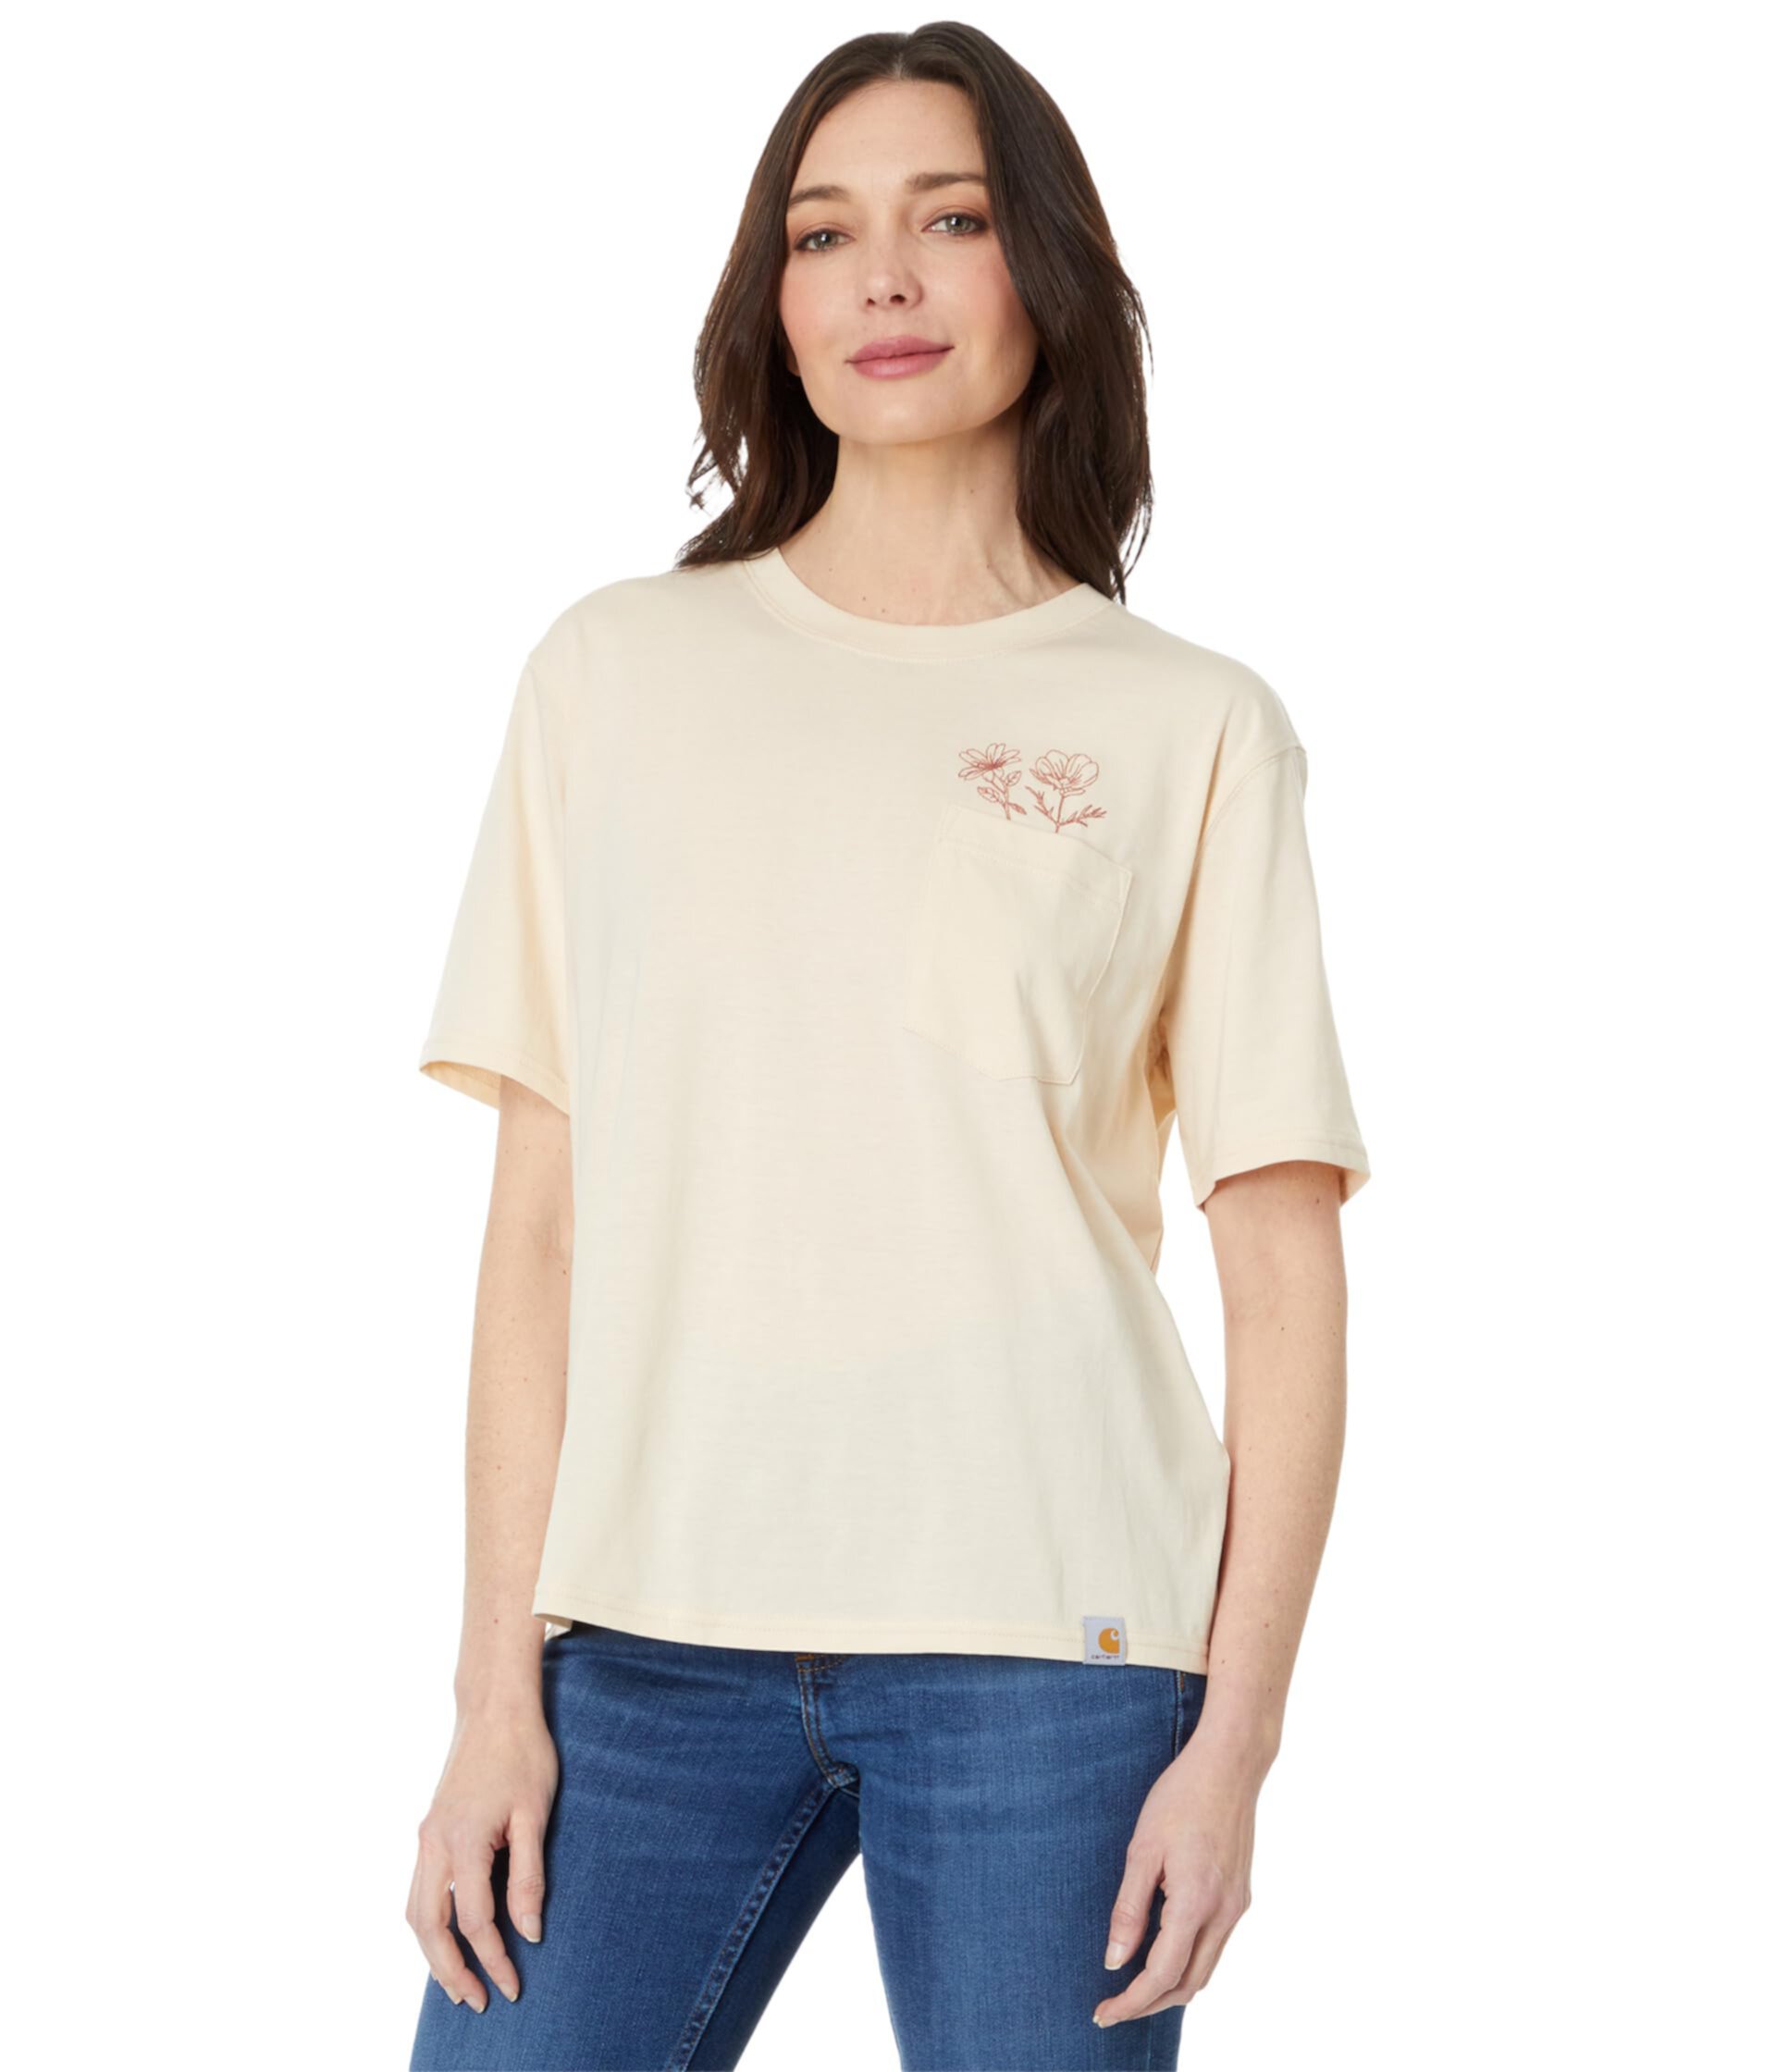 Легкая футболка свободного покроя с короткими рукавами и цветочным карманом Carhartt